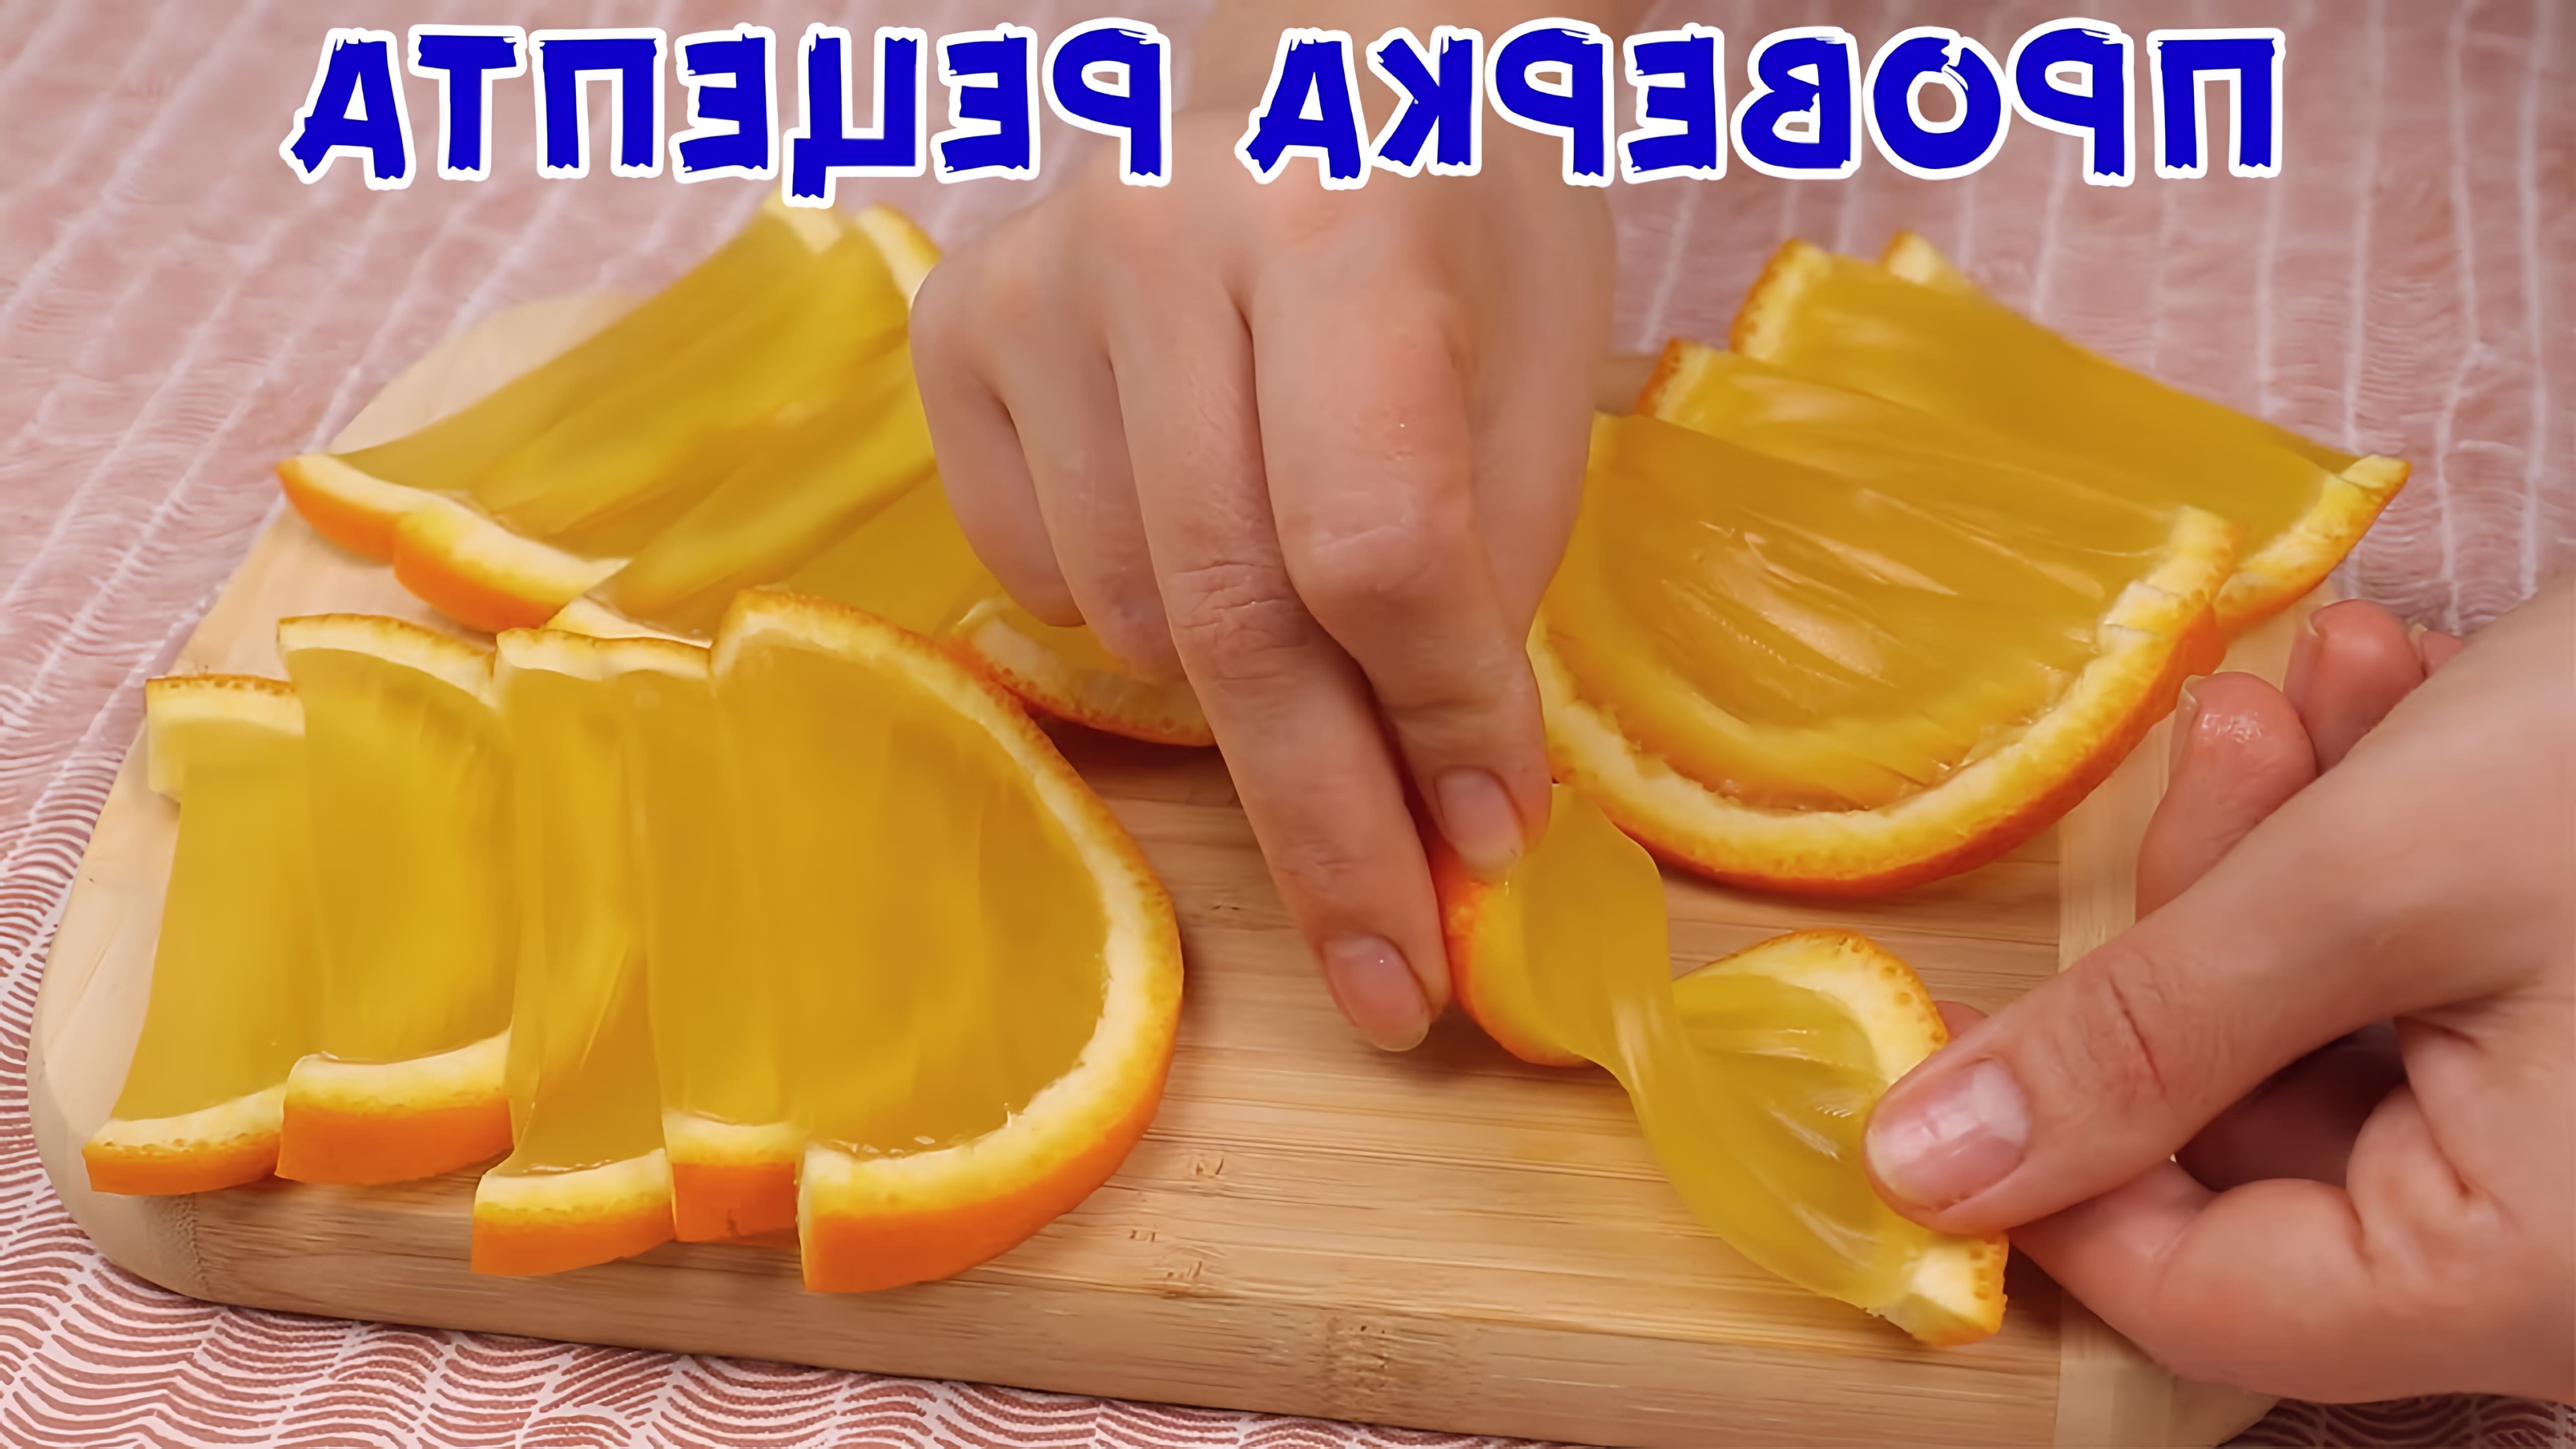 В этом видео демонстрируется процесс приготовления домашнего мармелада из апельсинов